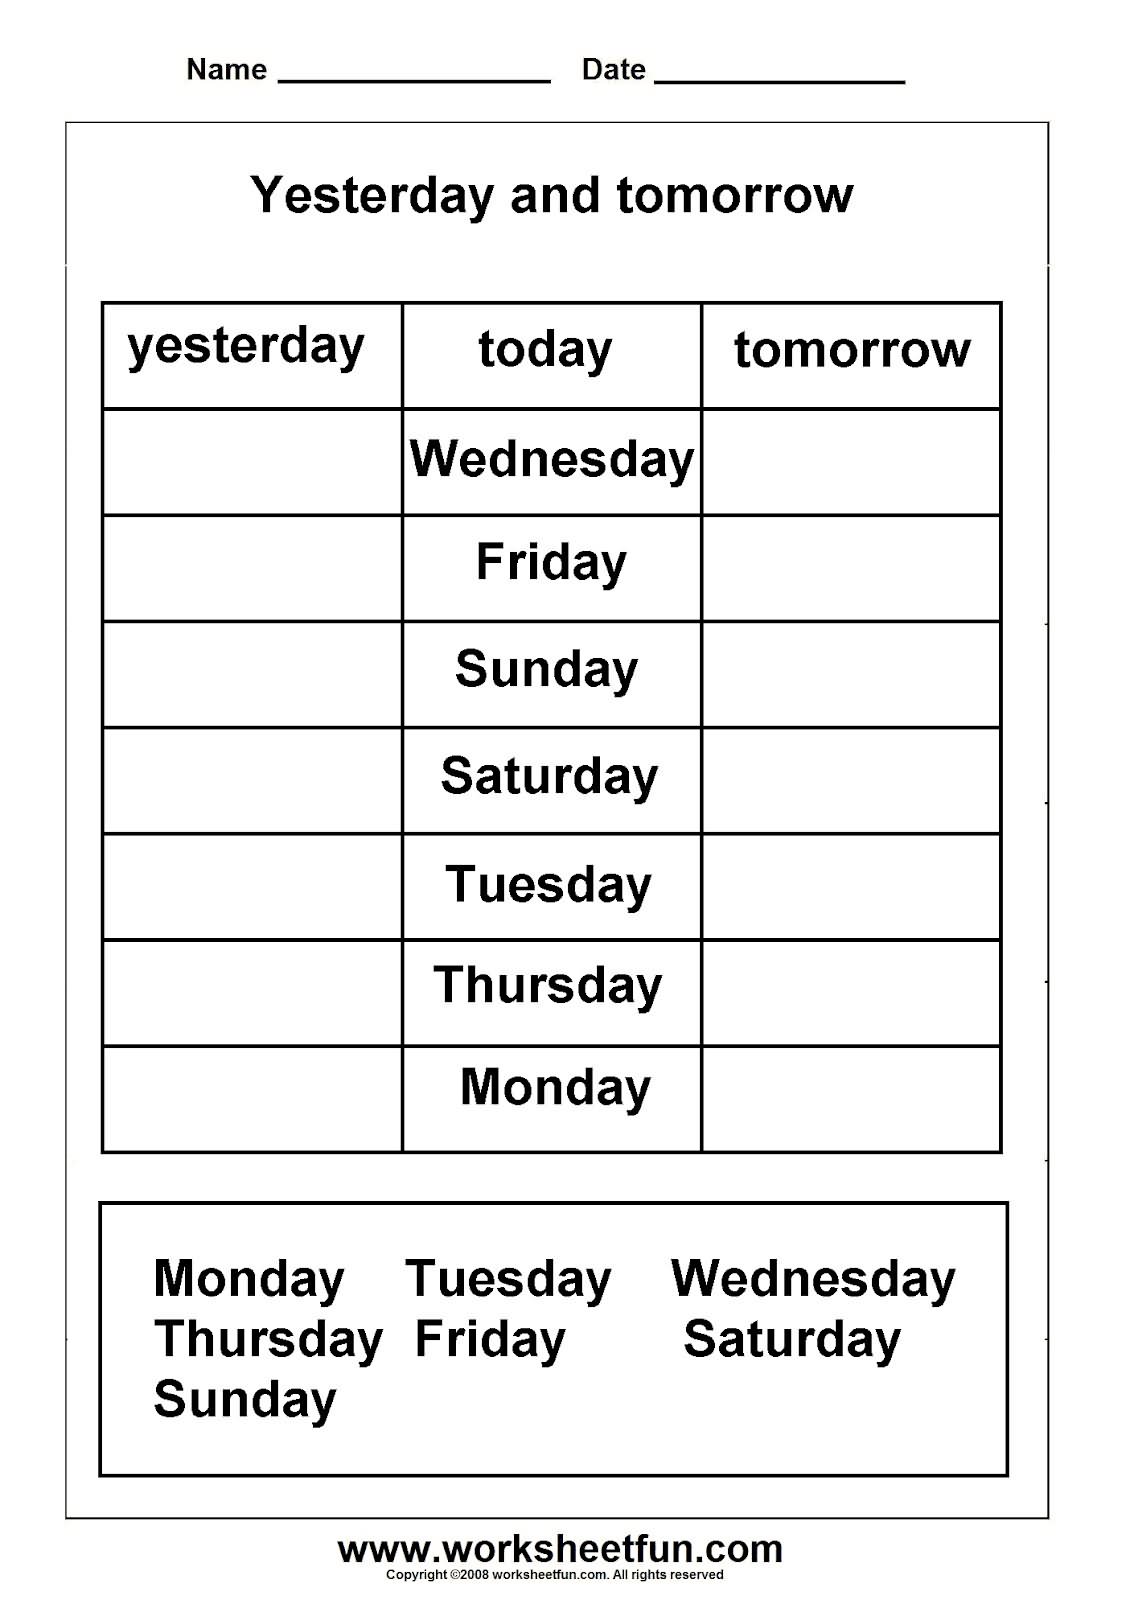 Days of Week Worksheets Printable Image